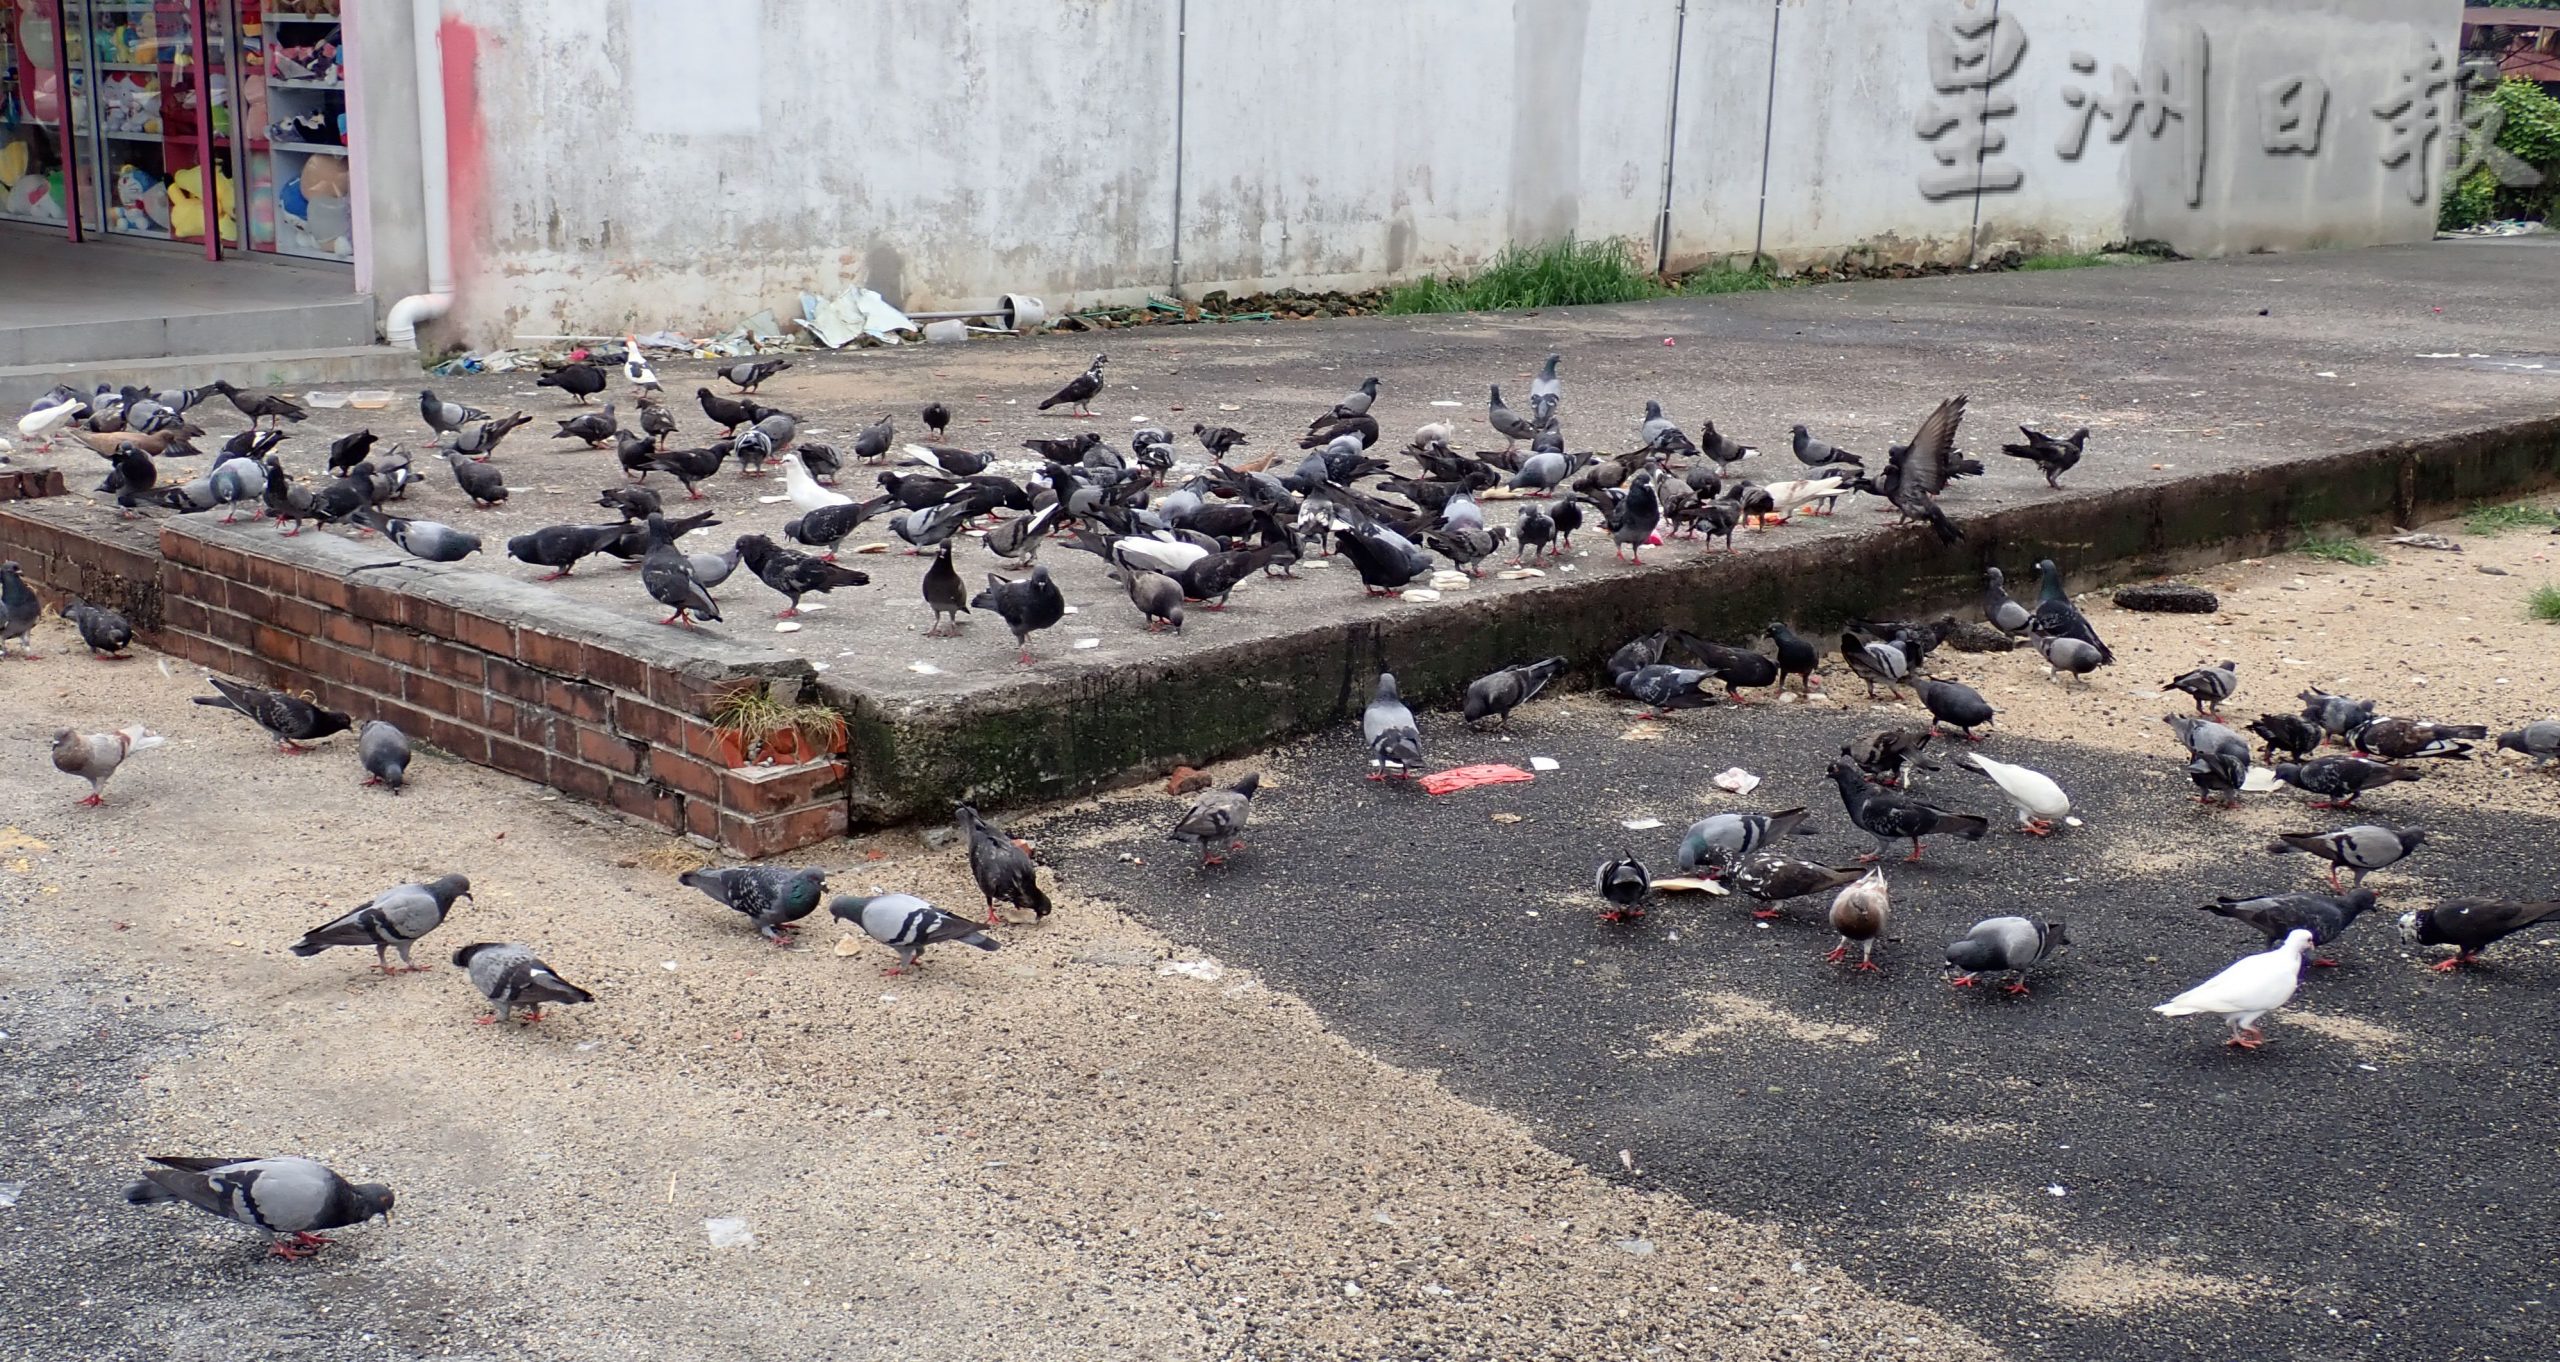 疑有人在谷类中下毒 数十只鸽子集体死亡